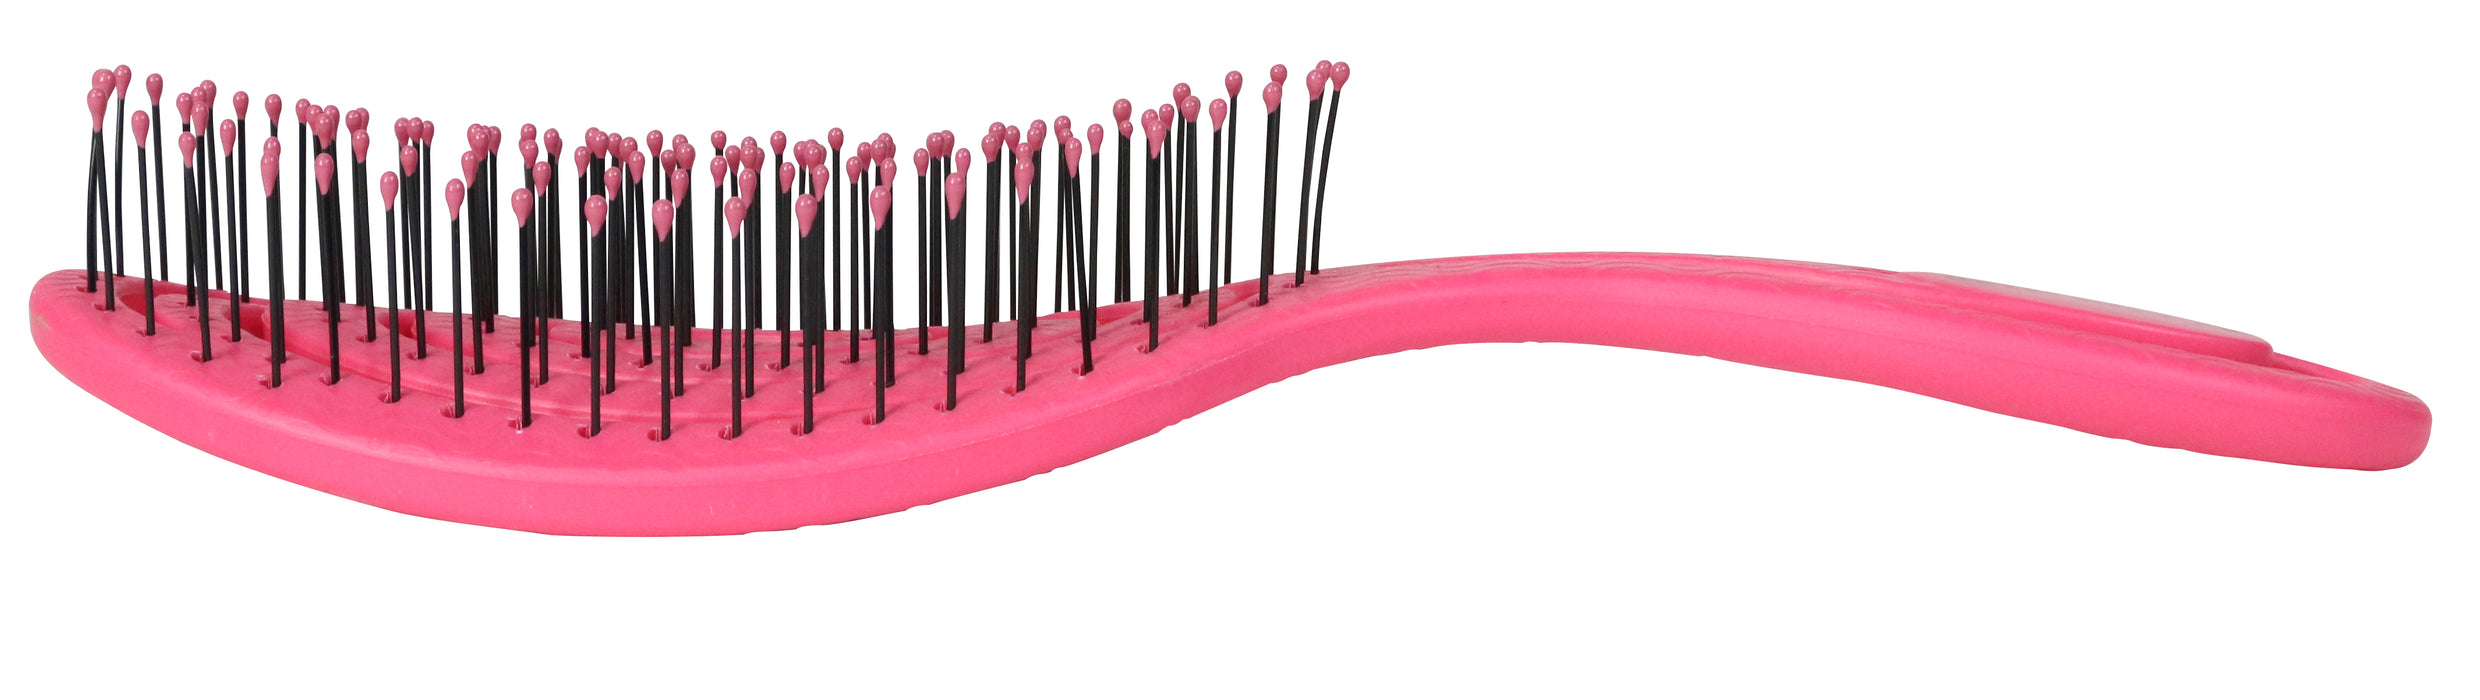 10% OFF:  Bass BIO-FLEX Swirl Detangling Pink Hair Brush (Assorted Colour)